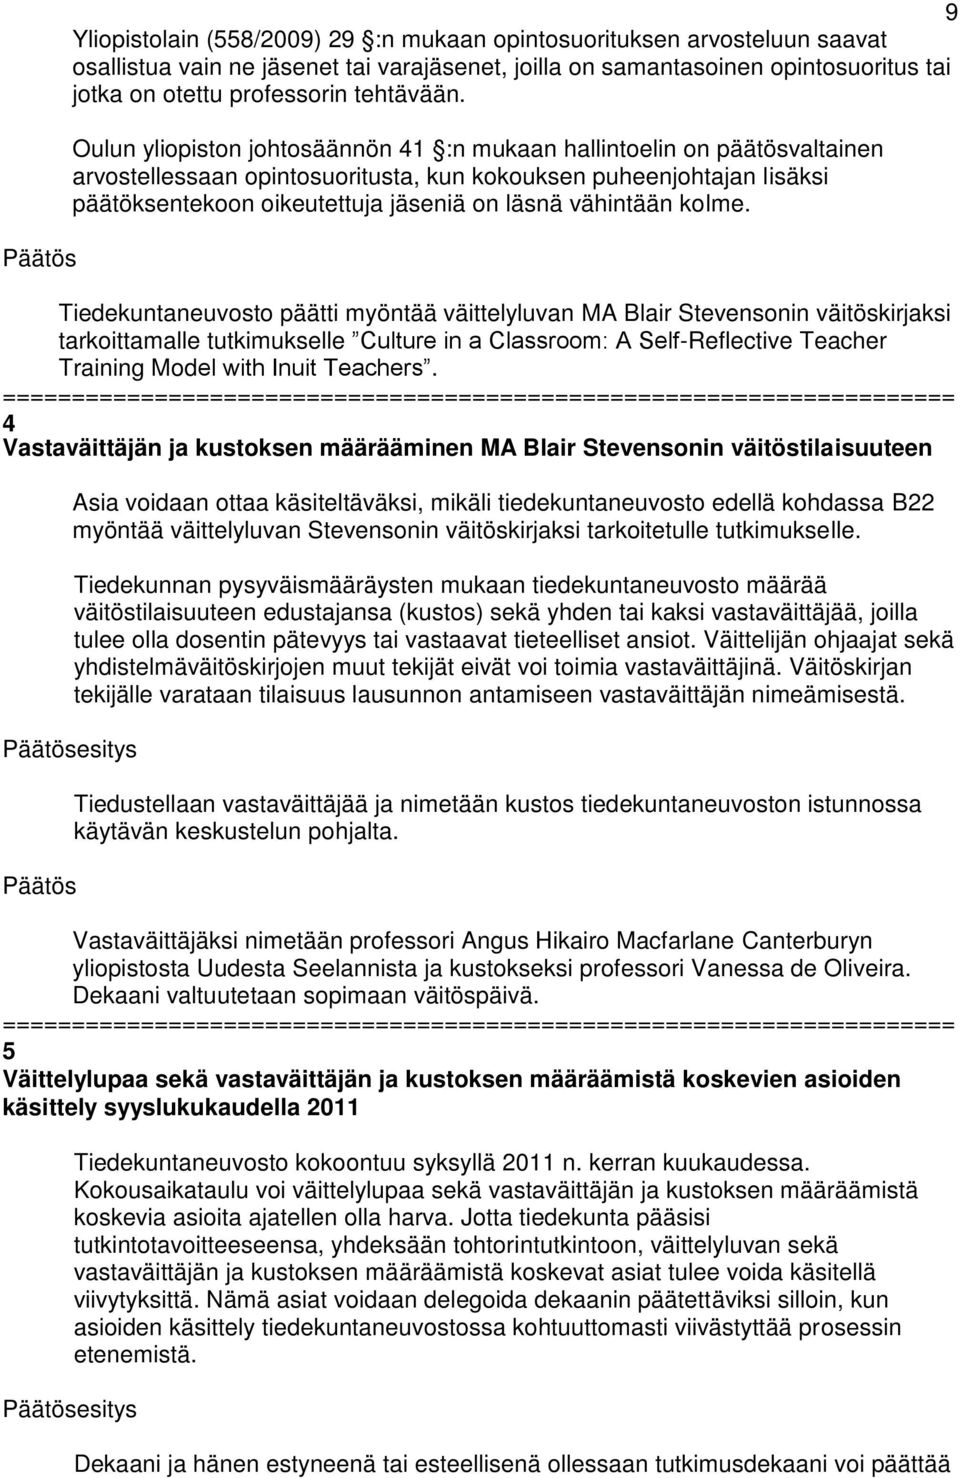 Oulun yliopiston johtosäännön 41 :n mukaan hallintoelin on päätösvaltainen arvostellessaan opintosuoritusta, kun kokouksen puheenjohtajan lisäksi päätöksentekoon oikeutettuja jäseniä on läsnä